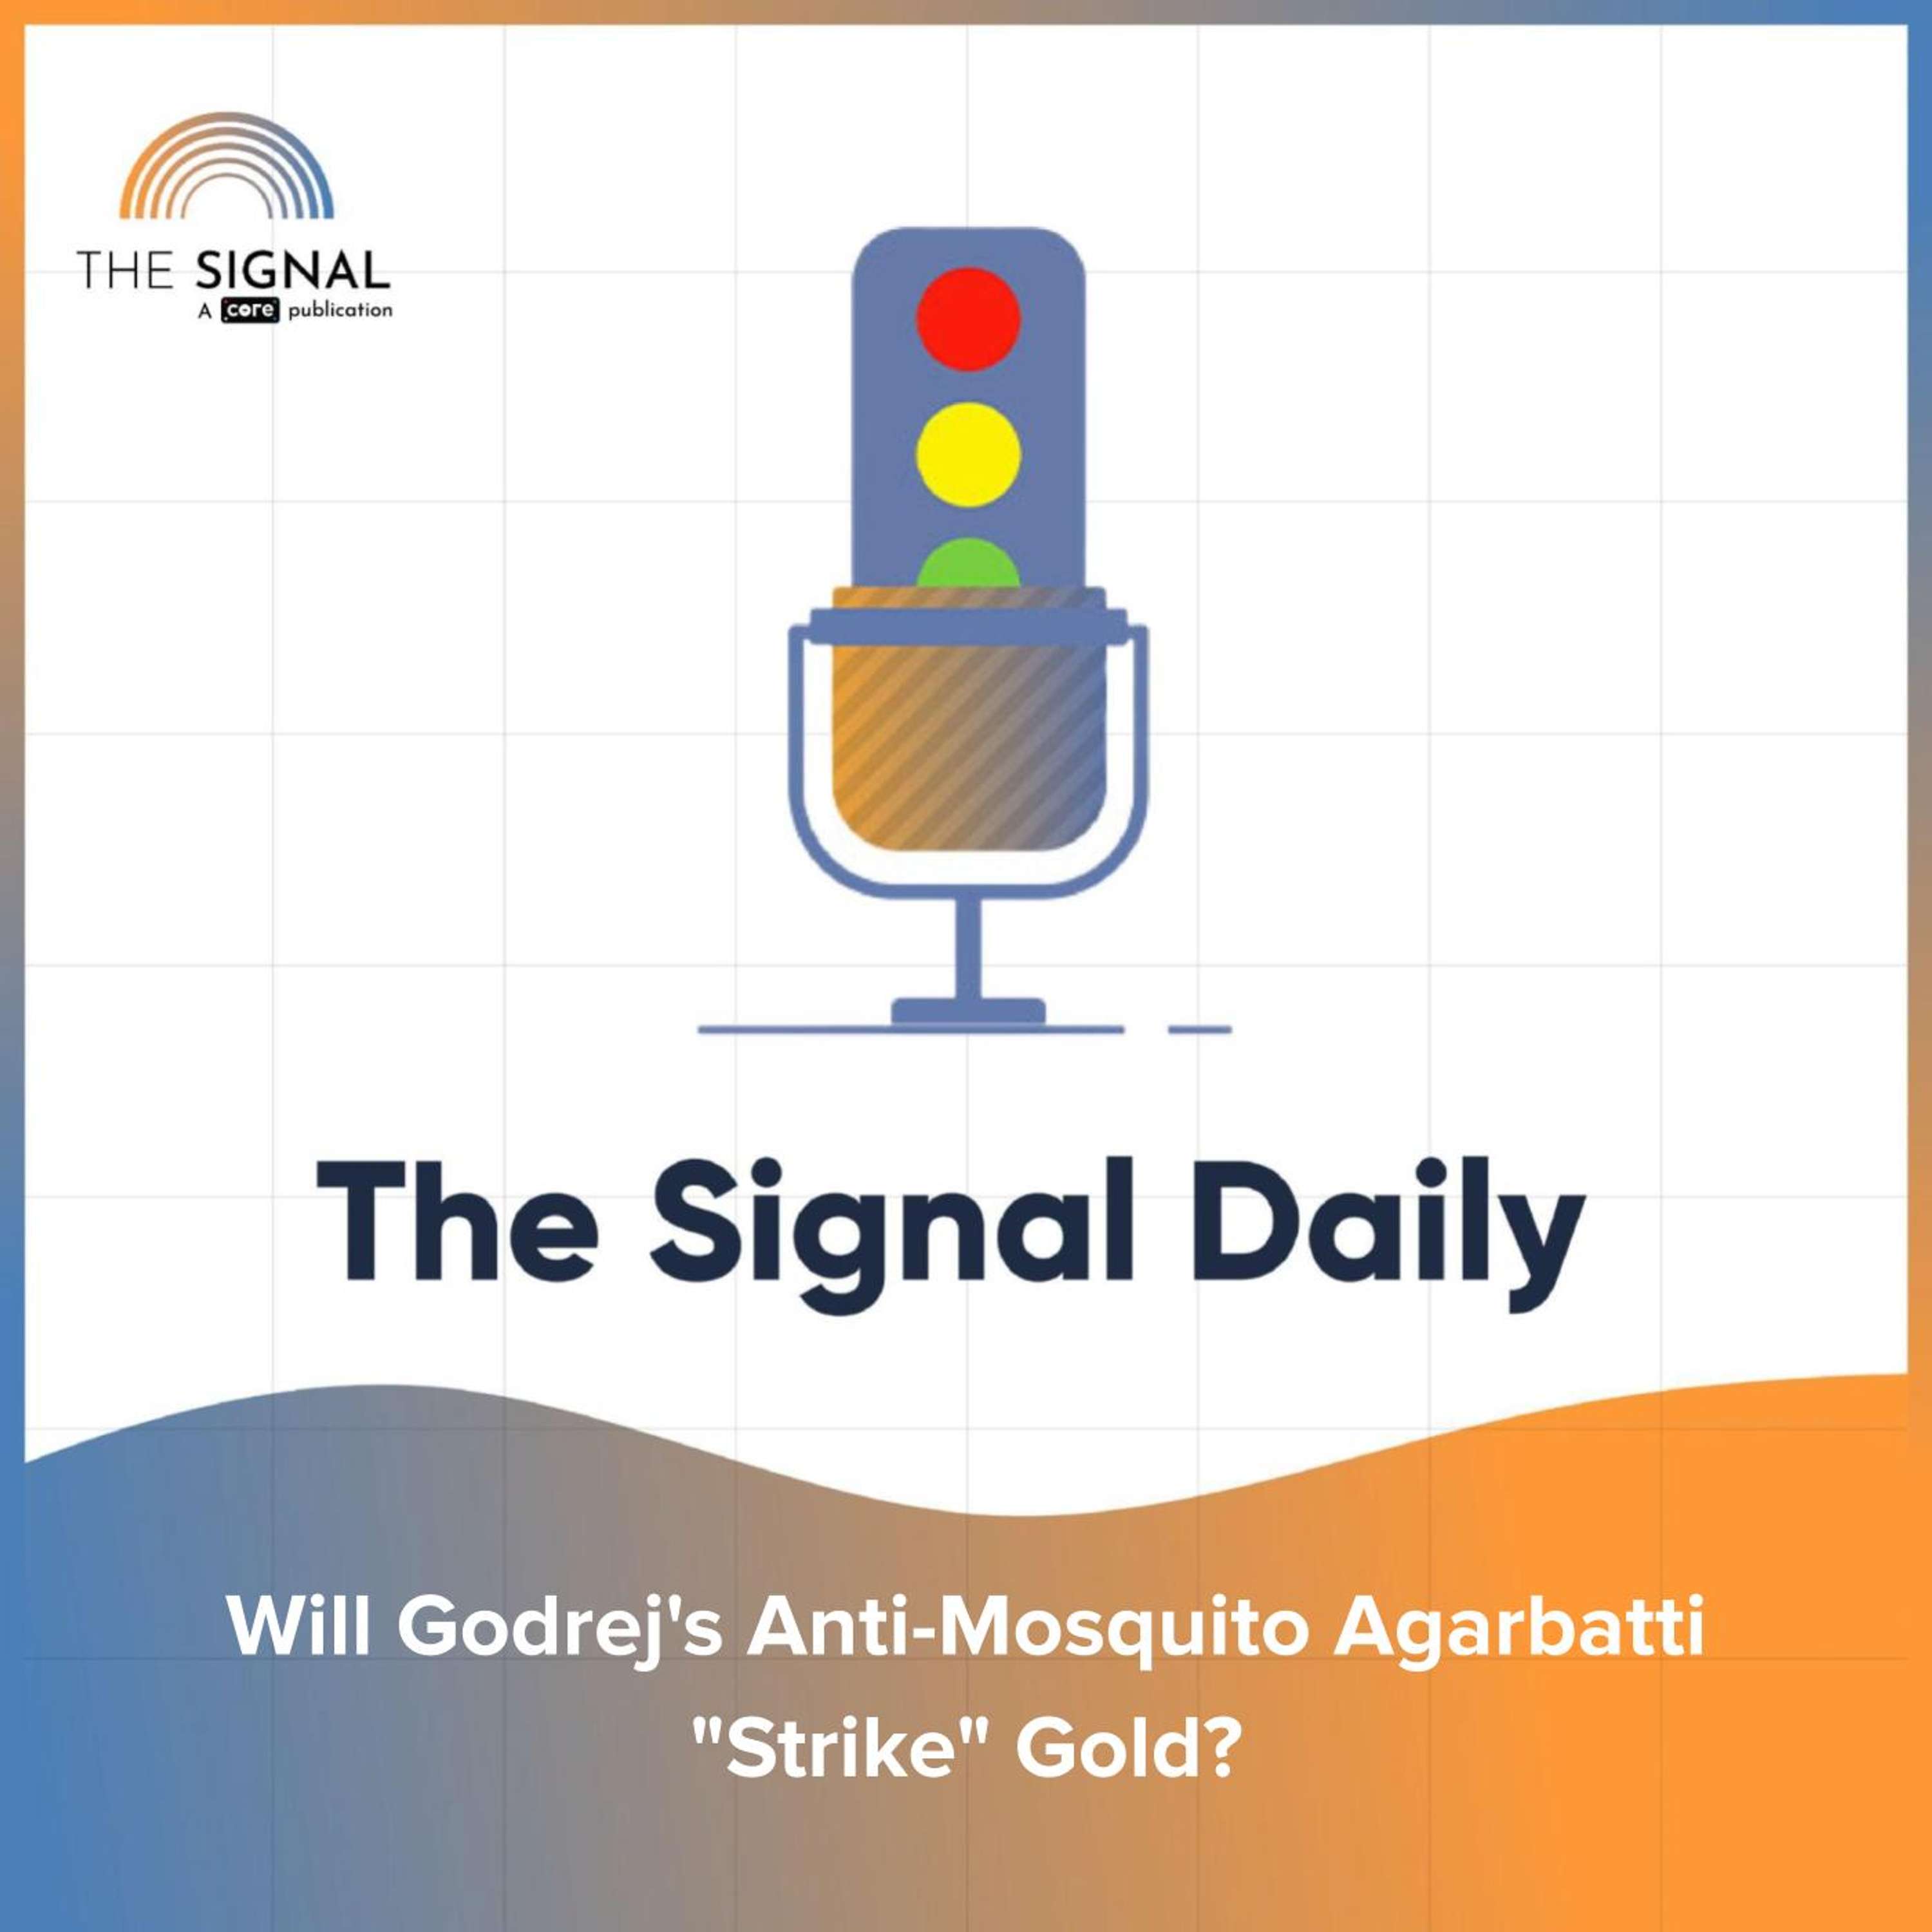 Will Godrej's Anti-Mosquito Agarbatti "Strike" Gold?